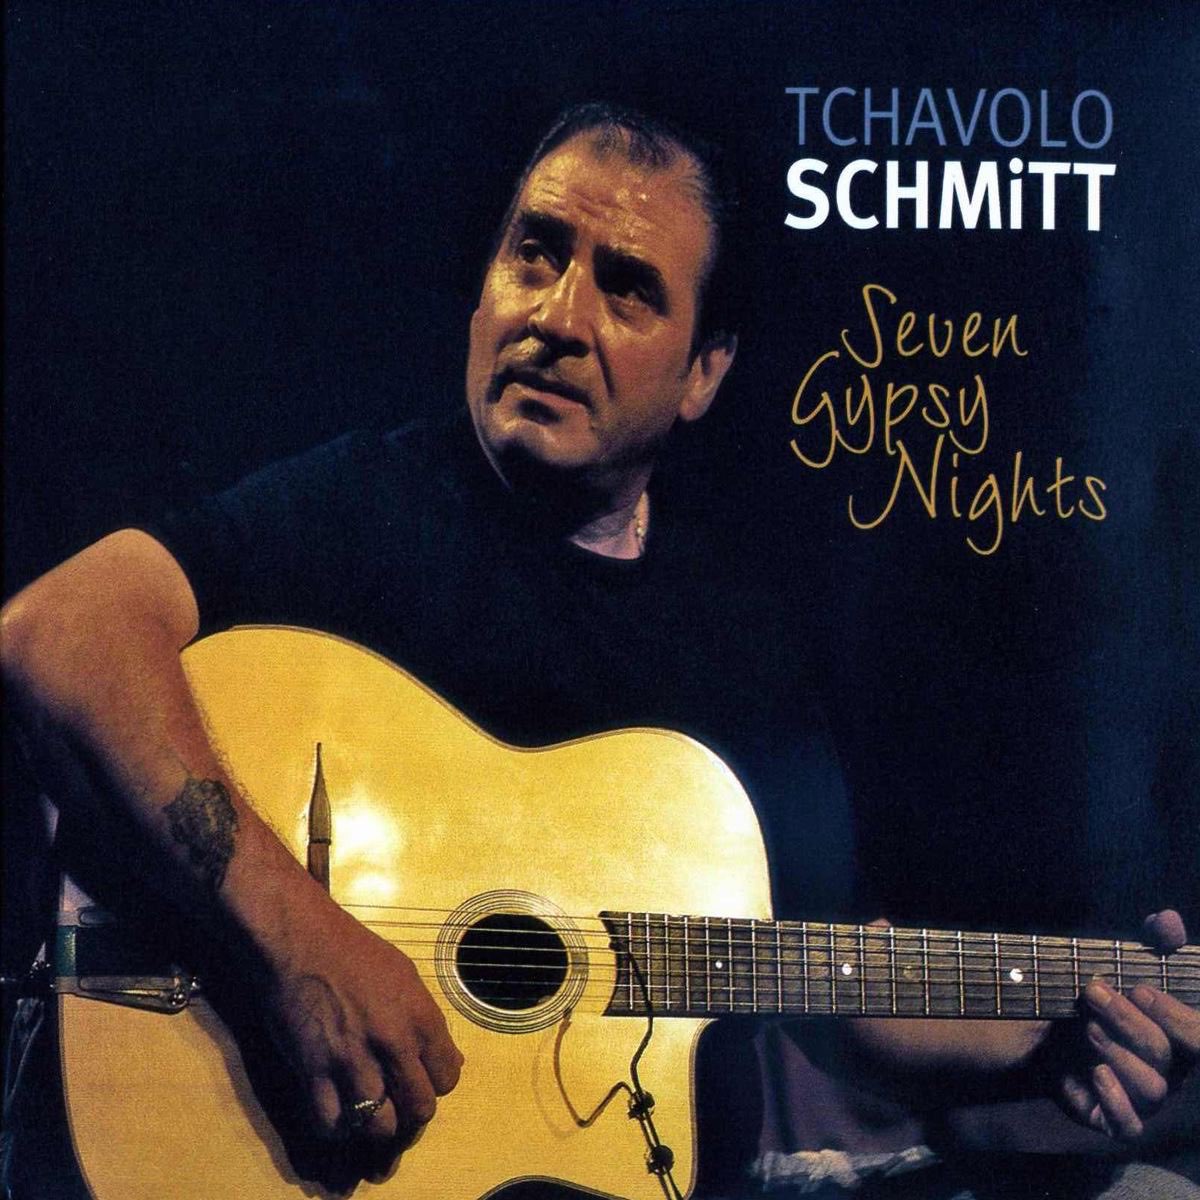 Tchavolo Schmitt - 7 gypsy nights